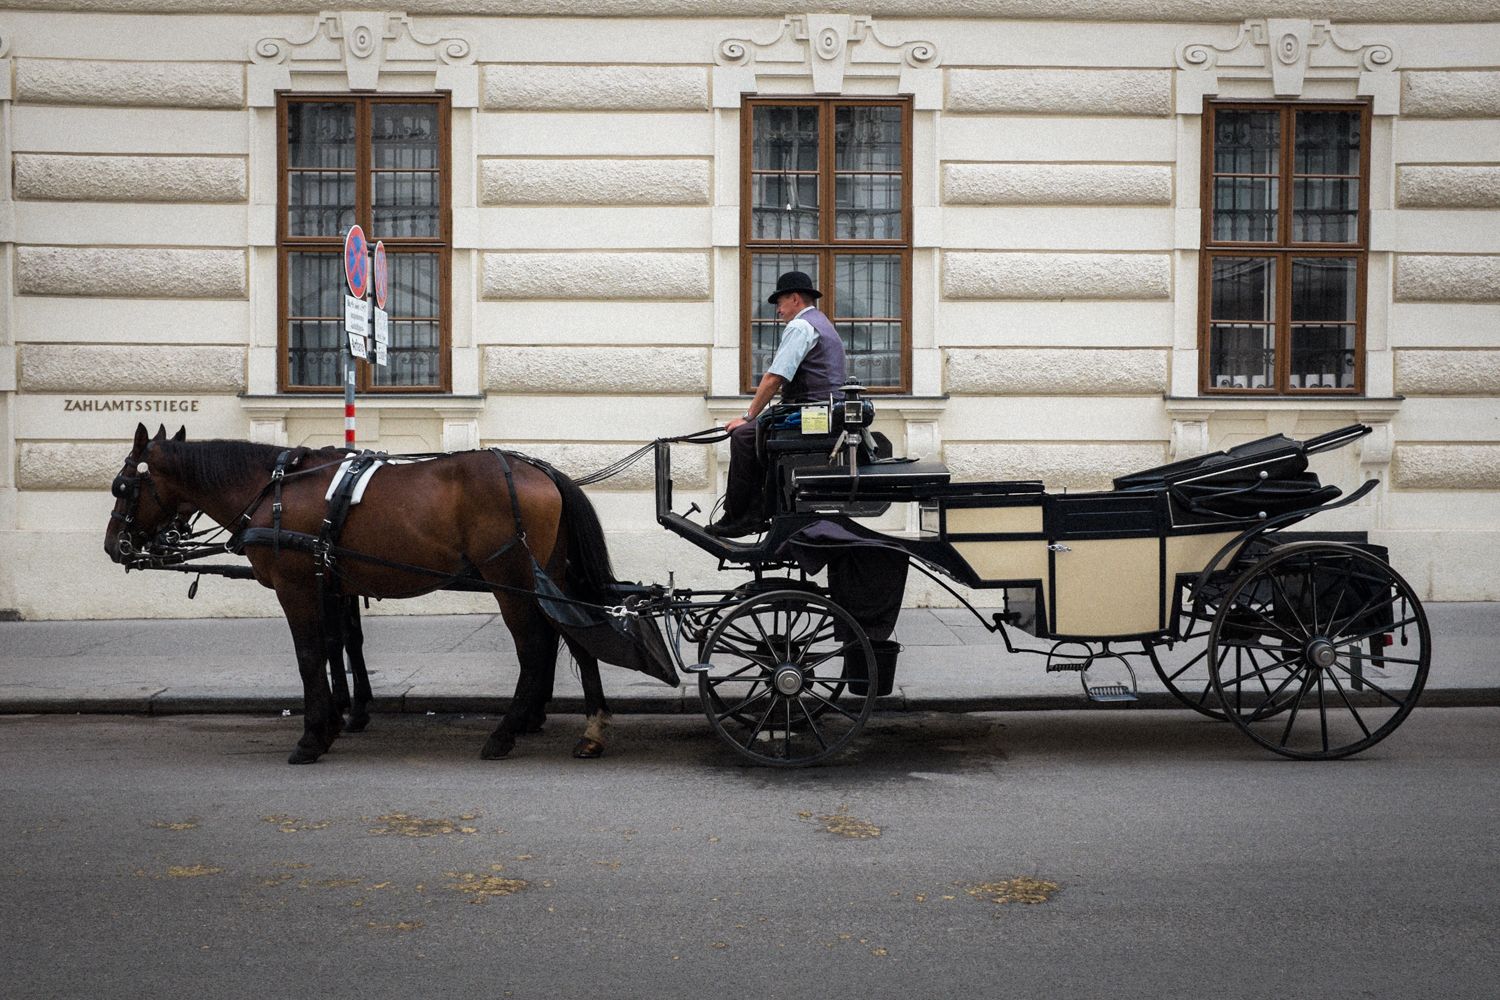 Pferdekutsche und Kutscher in den Straßen von Wien an der Zahlamtsstiege